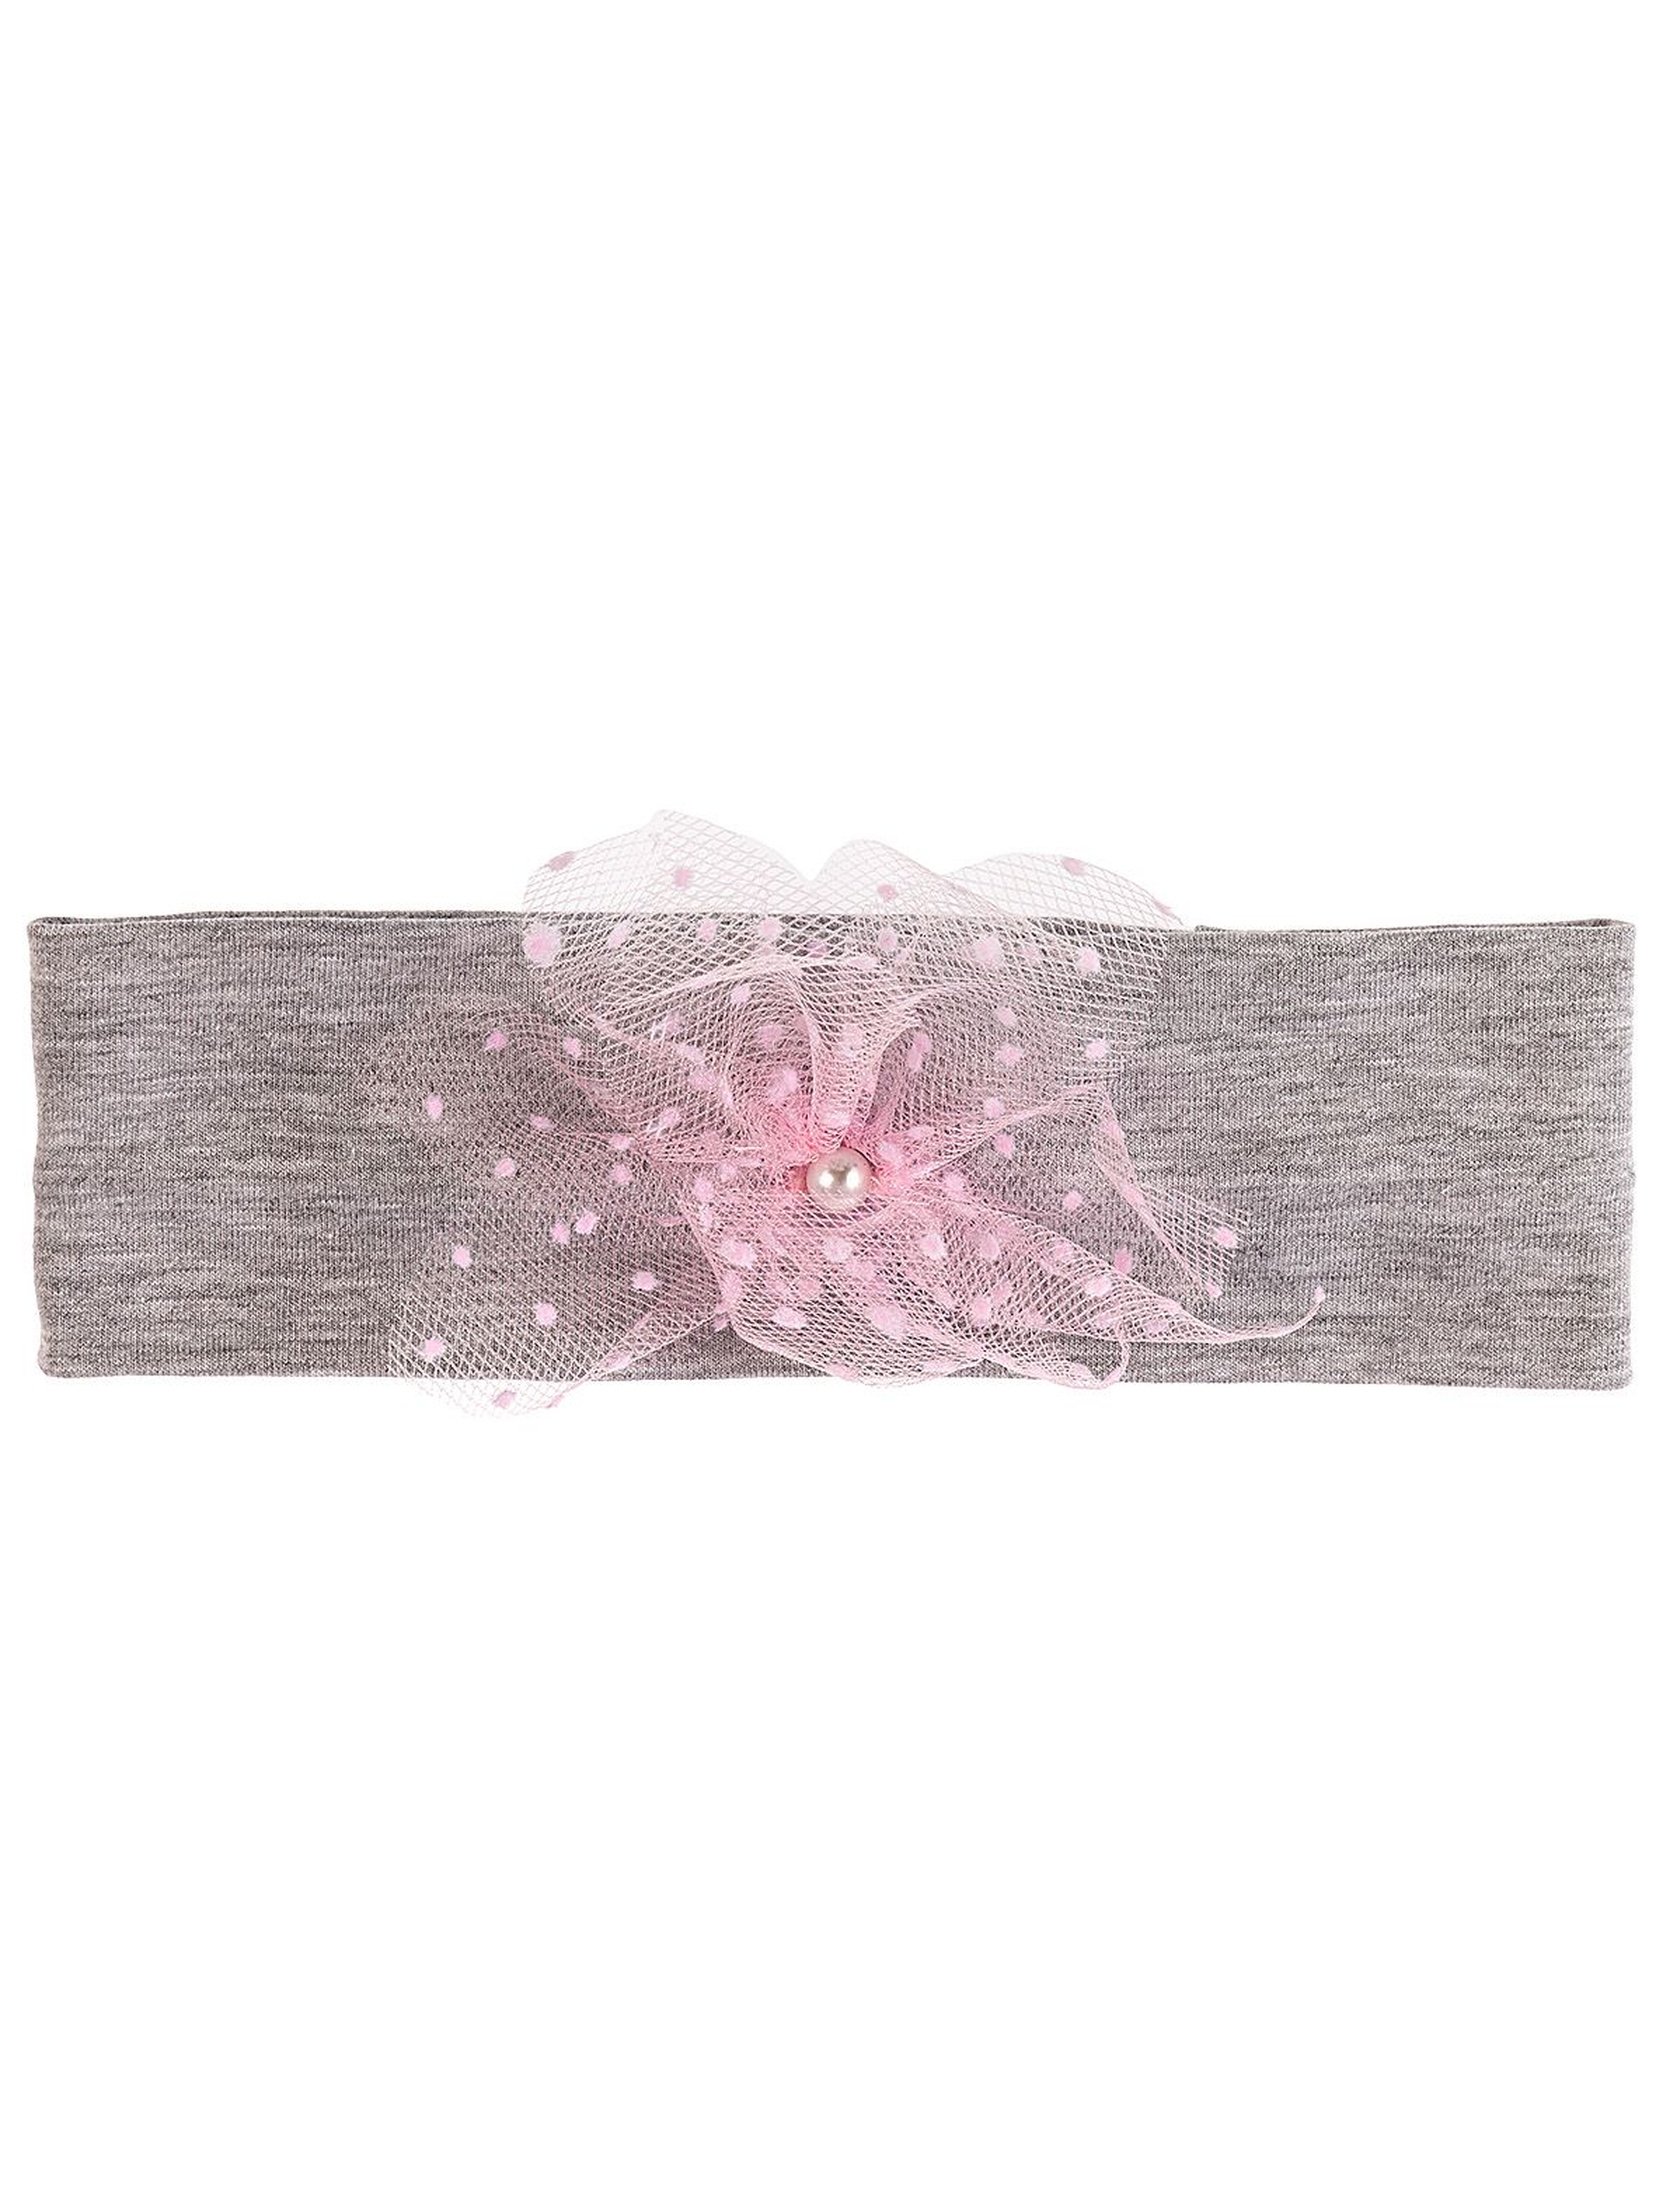 Opaska dzianinowa na głowę- szara z różową kokardką